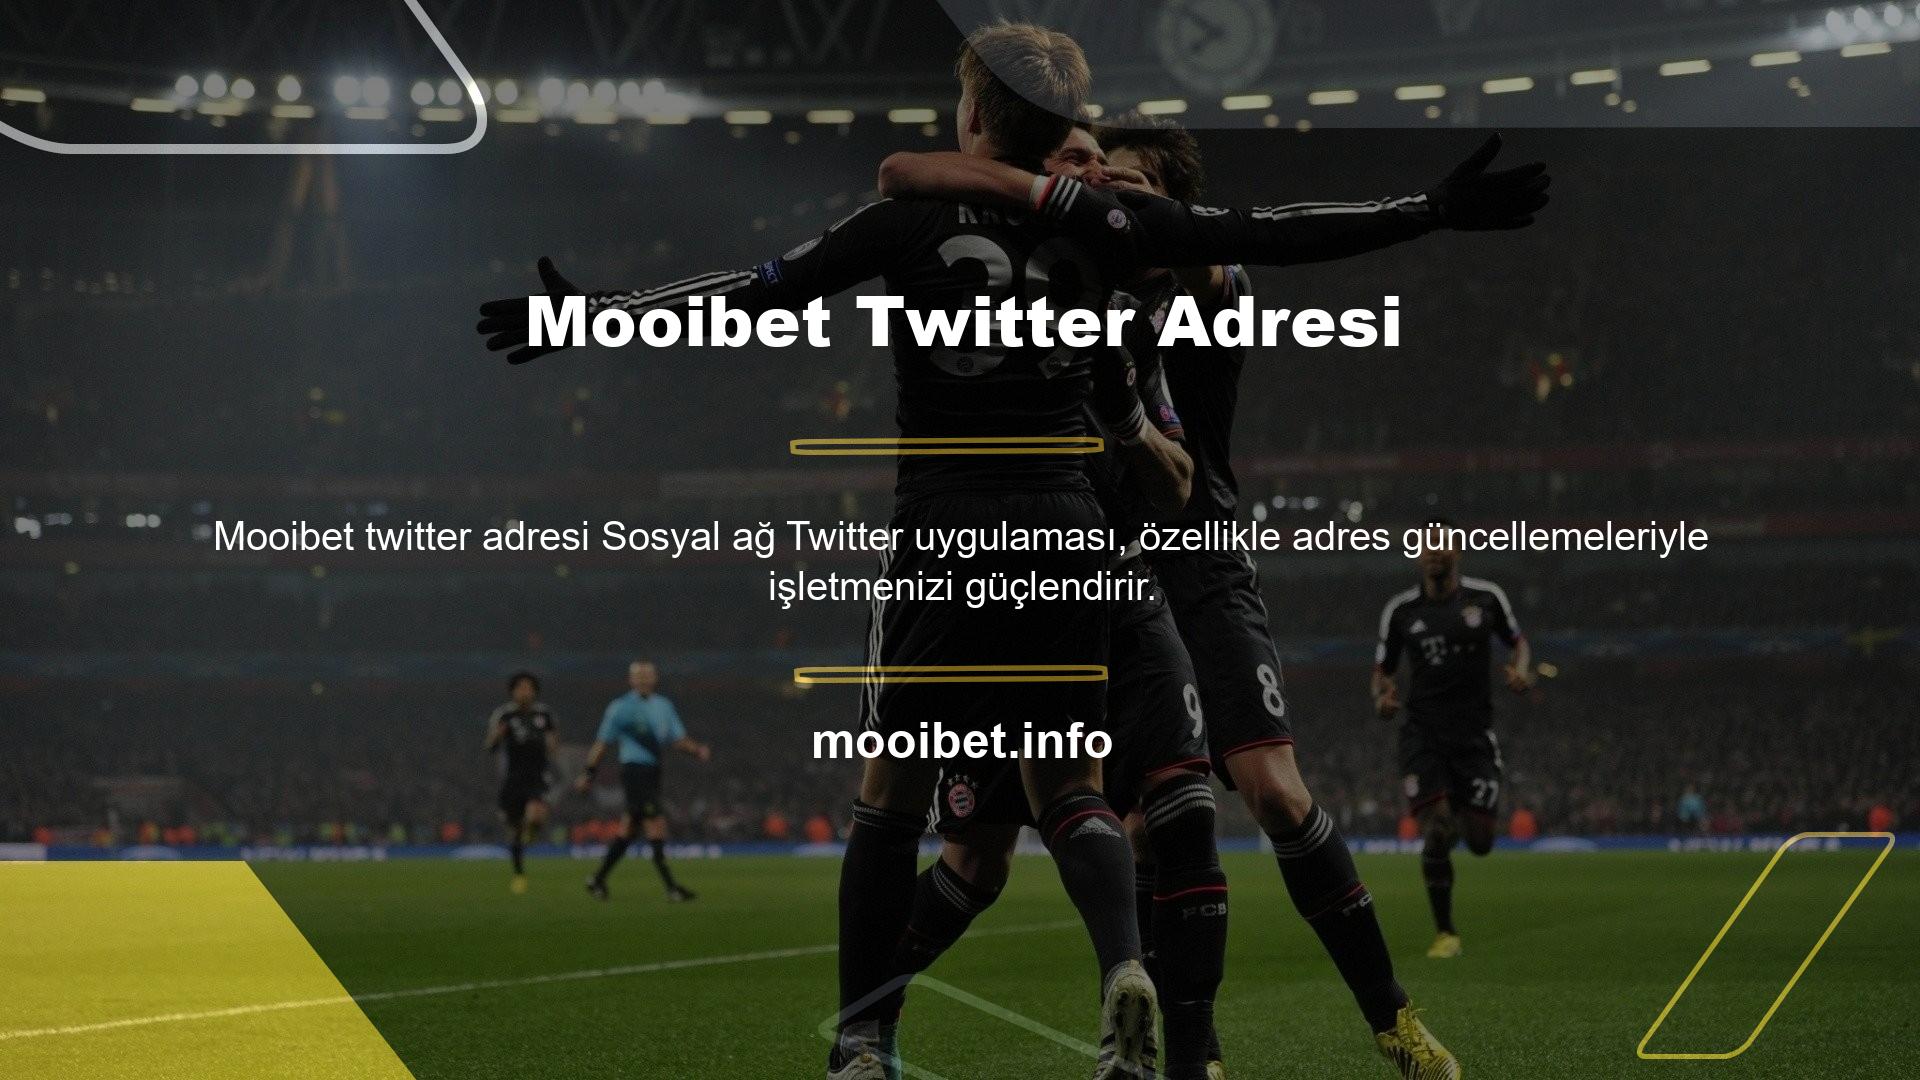 Mooibet Twitter Adresi